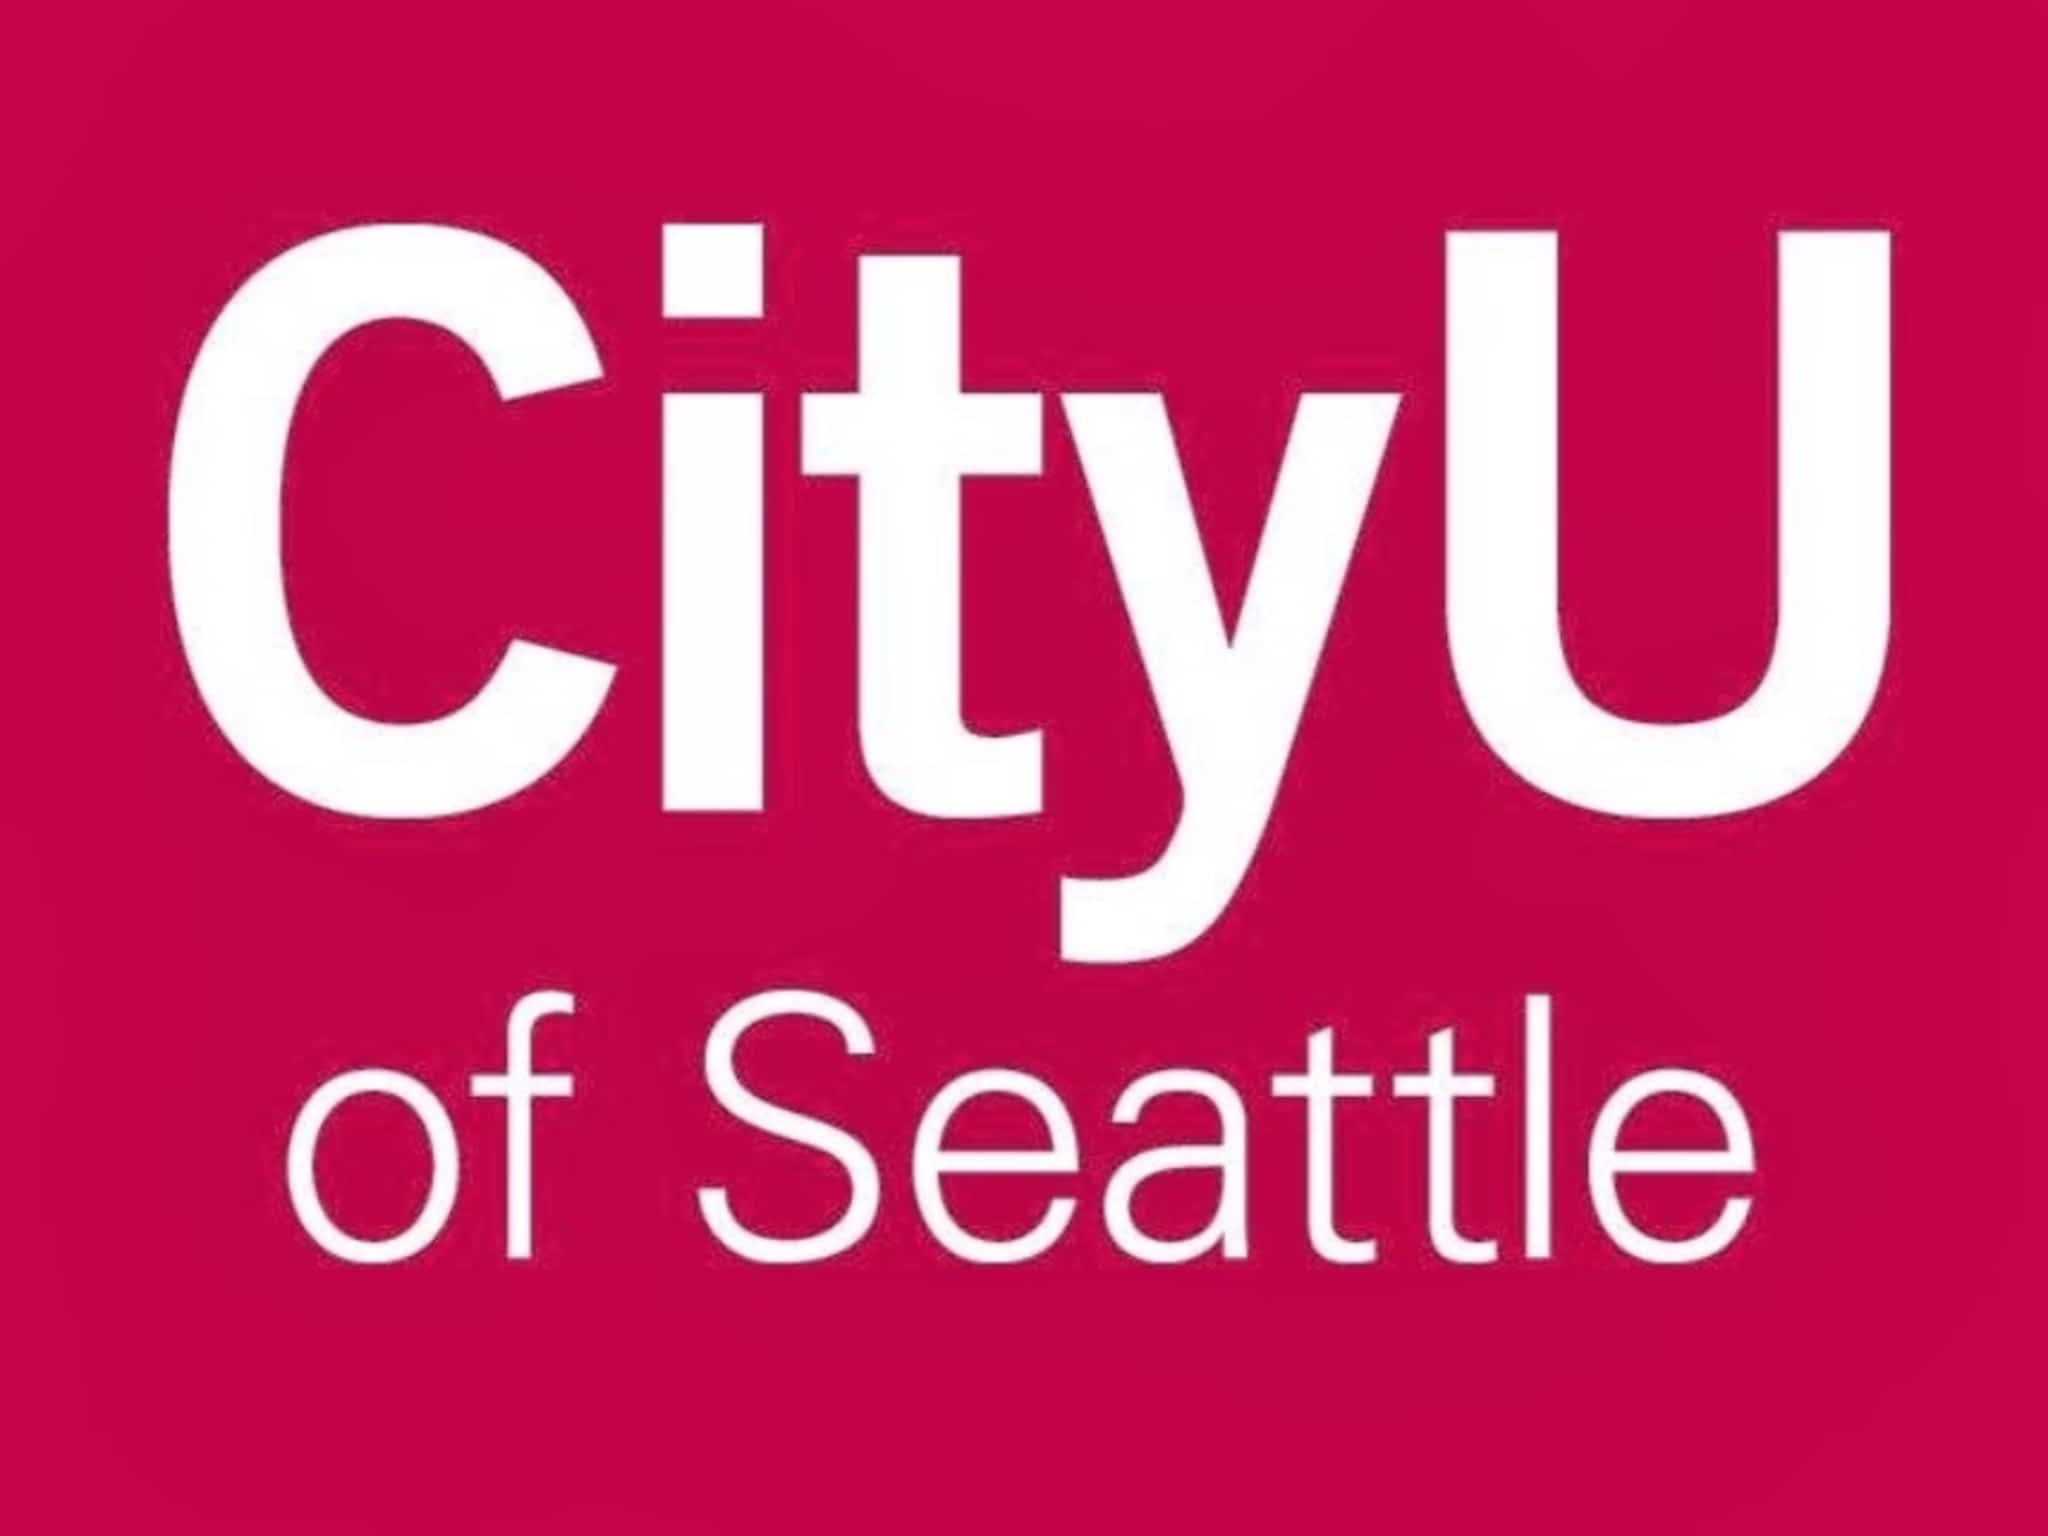 photo CityU of Seattle